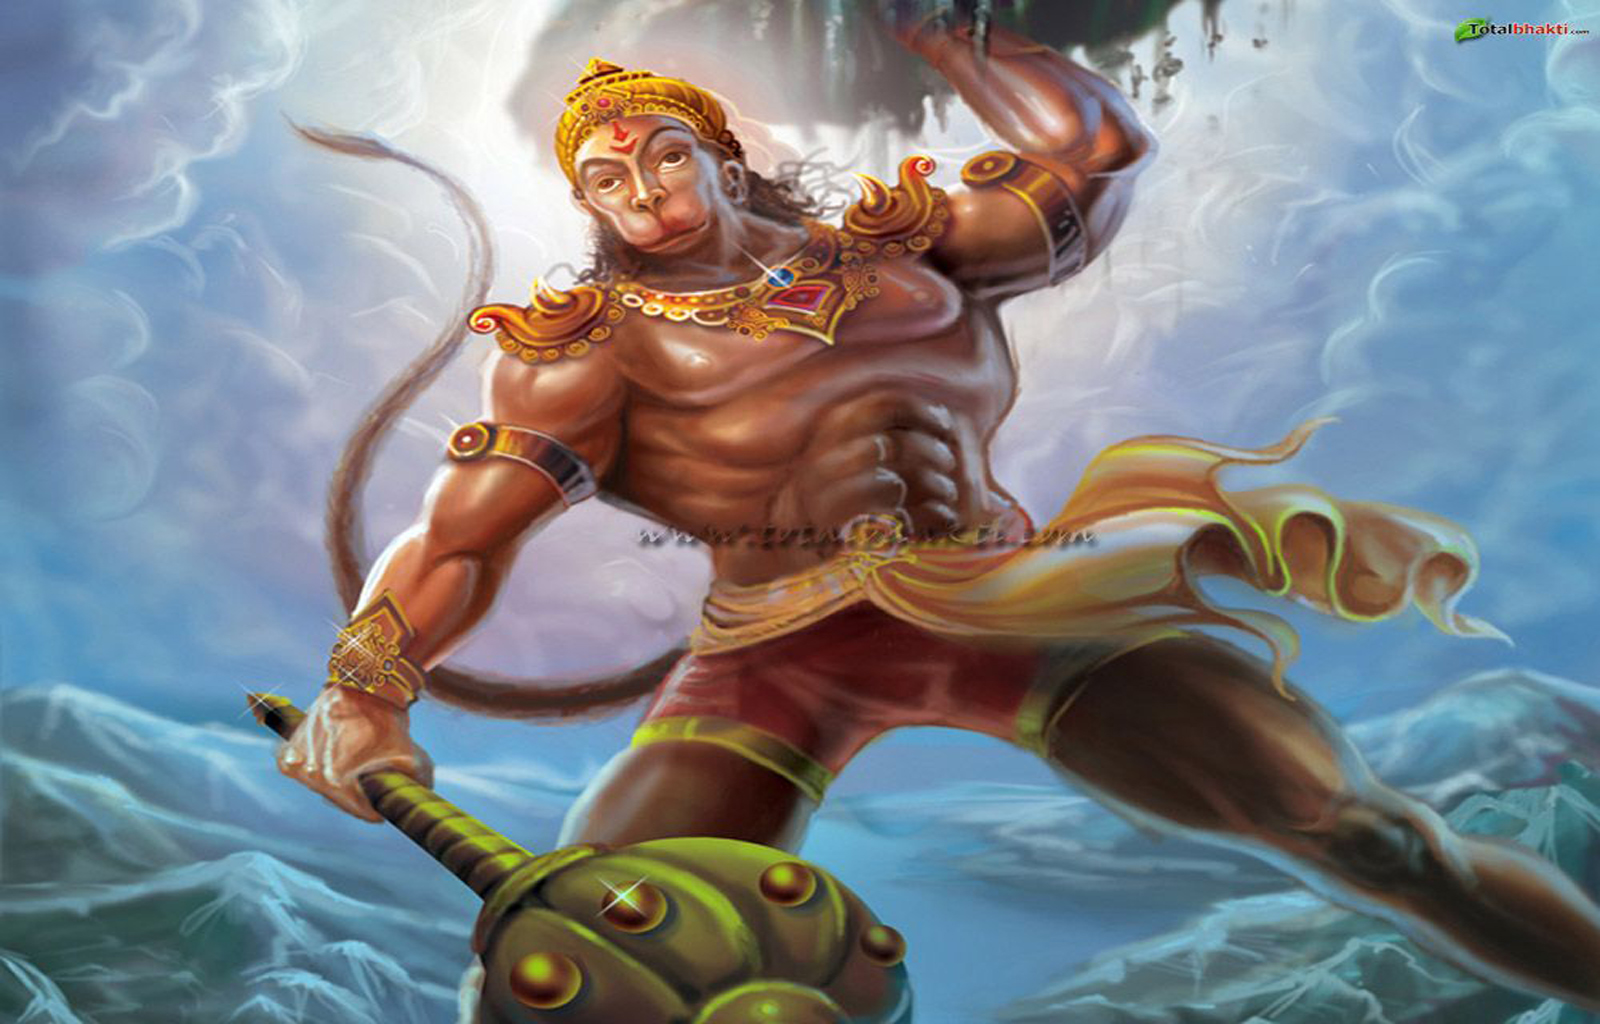 www.totalbhakti.com_wallpaper_image_Lord_Hanuman_146.jpg